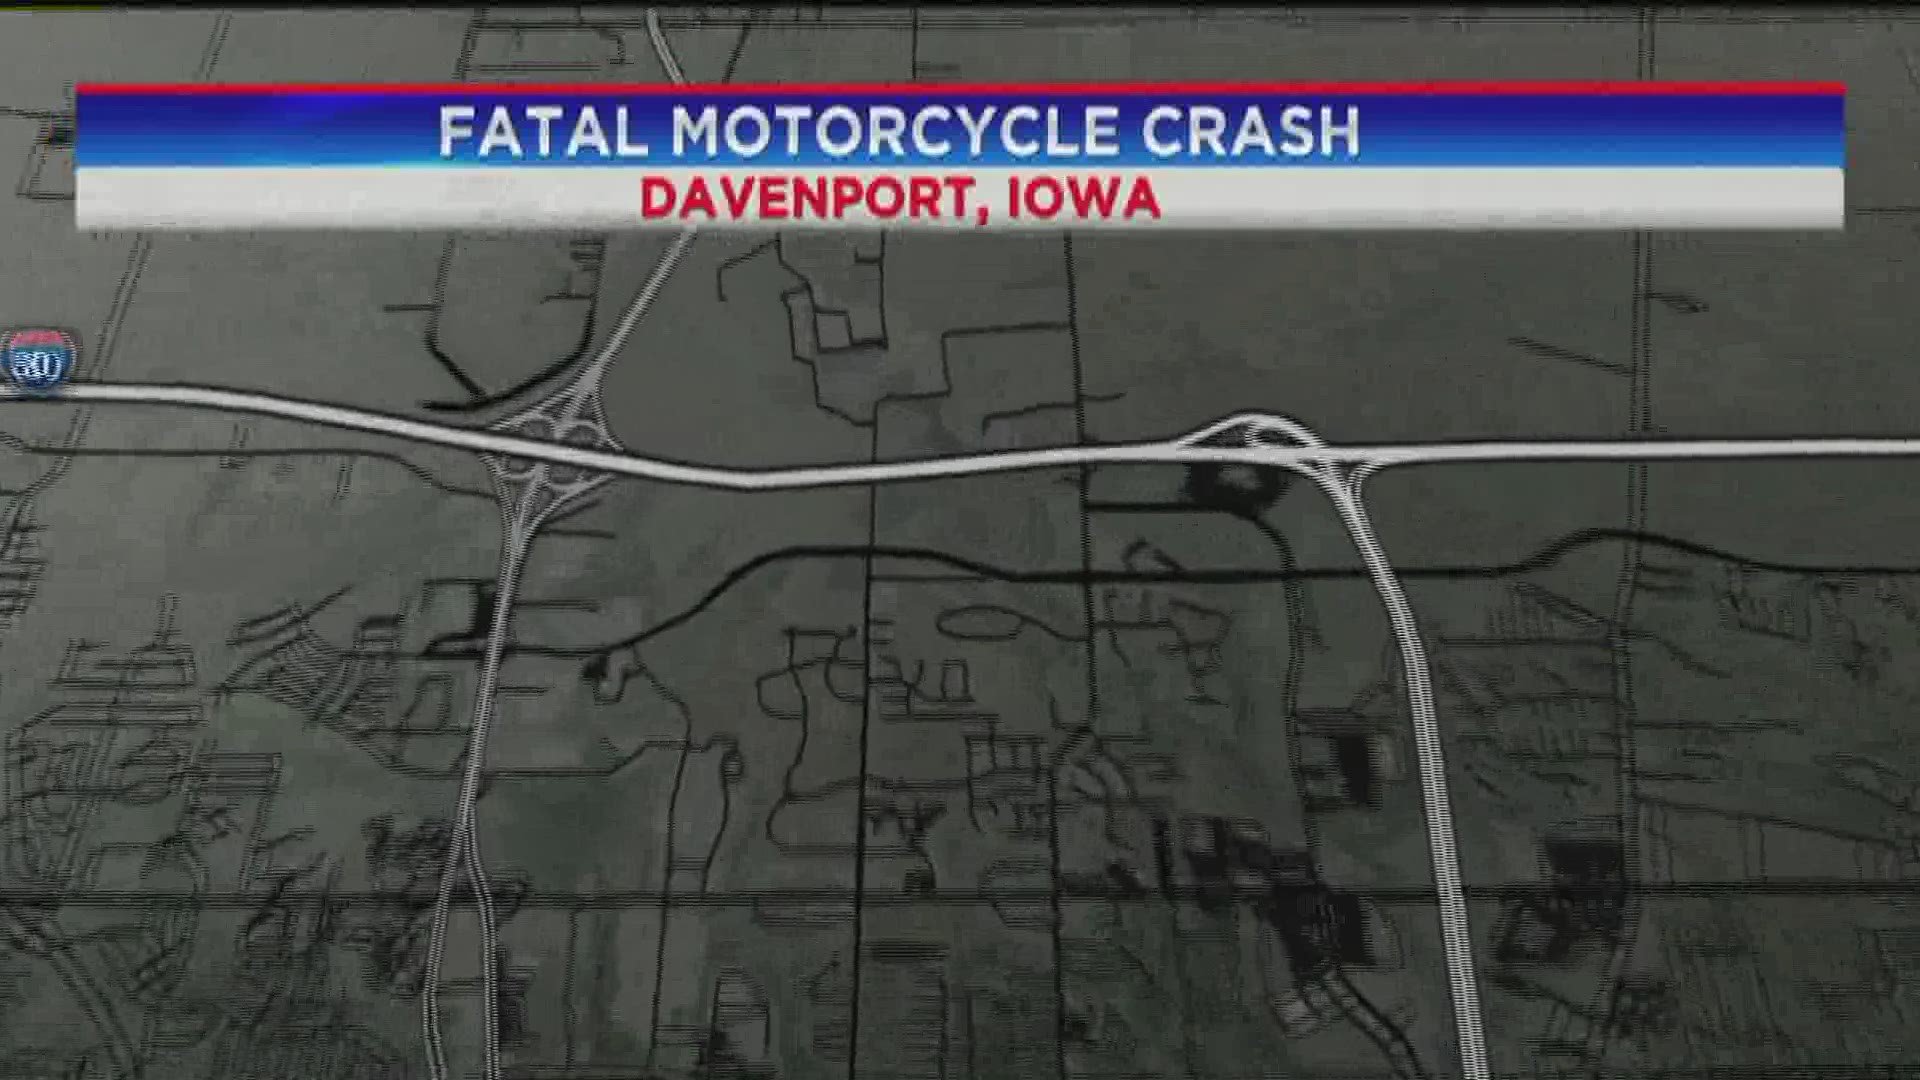 Davenport Motorcycle Crash August 3 Update